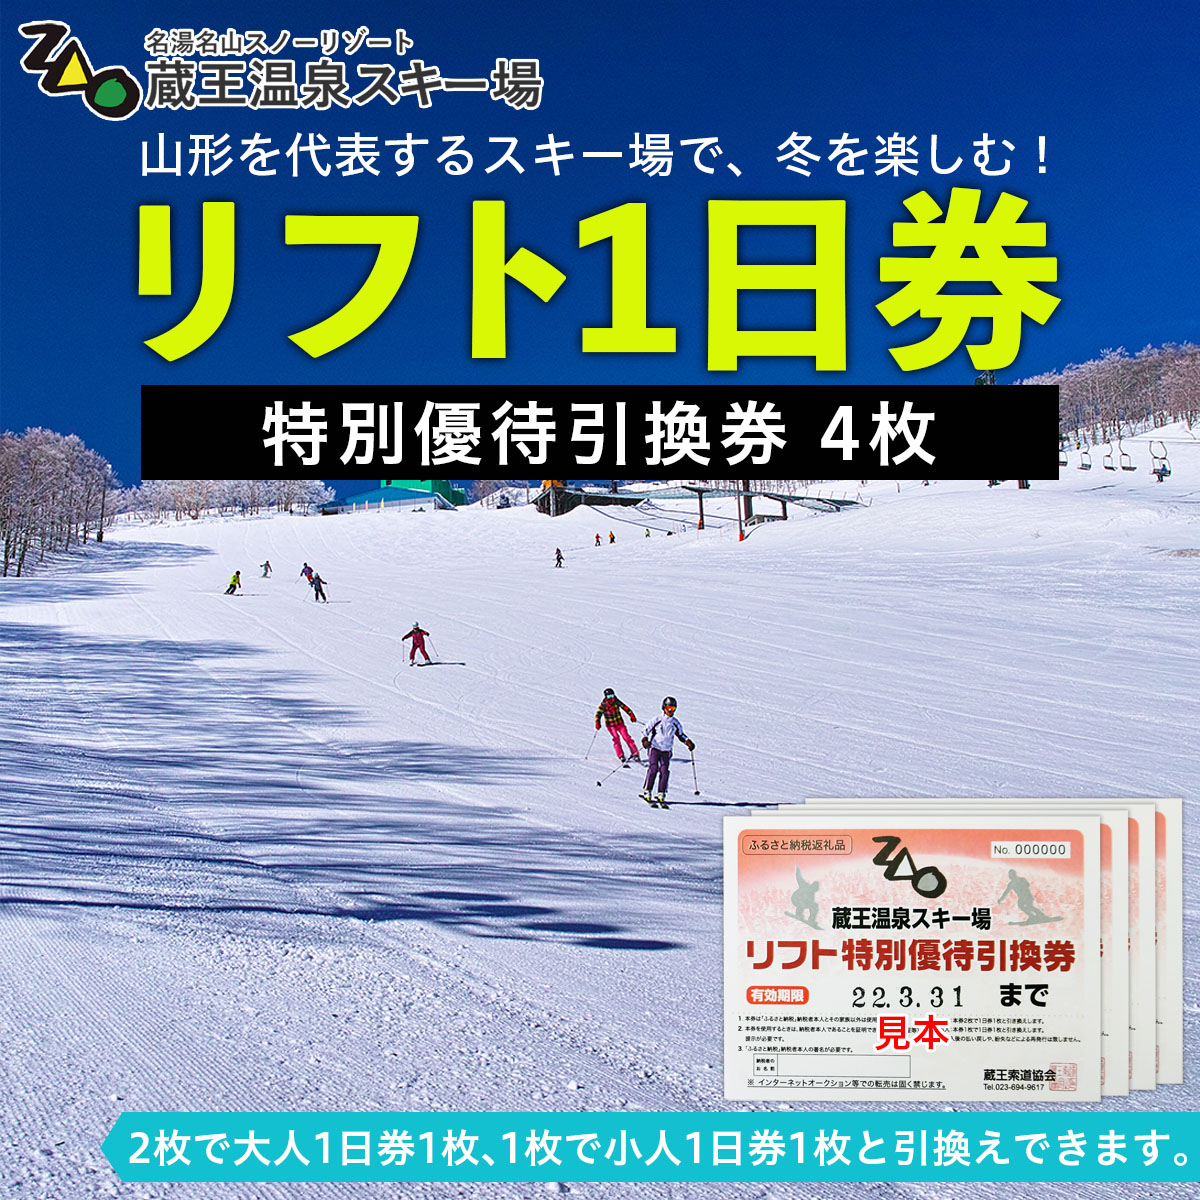 関東18スキー場 共通スキーリフト1日券 - ウィンタースポーツ